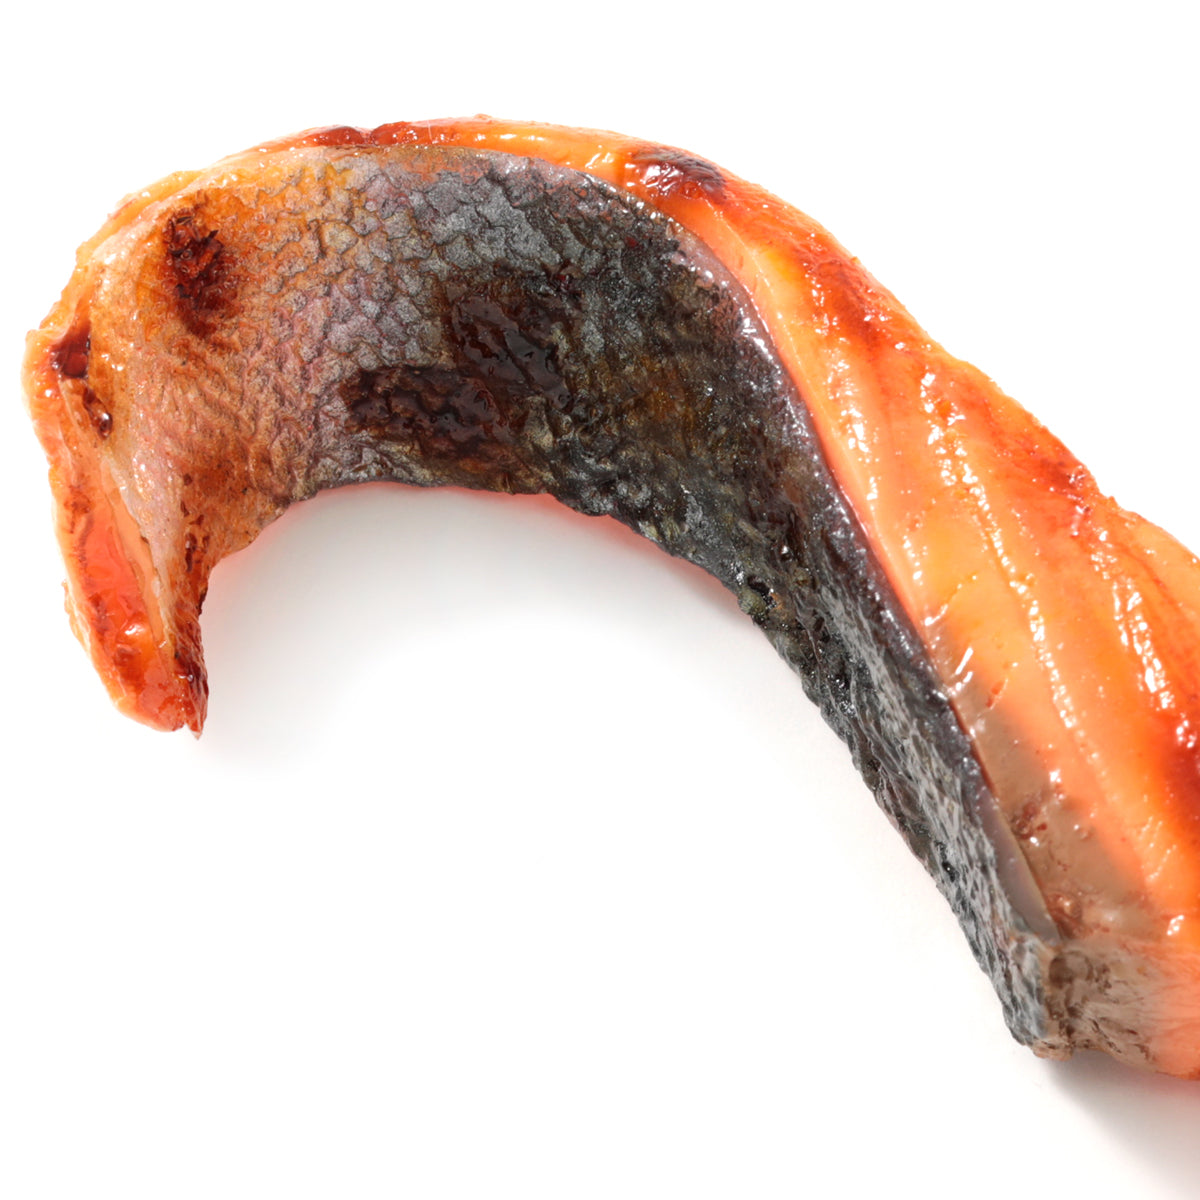 これは元祖食品サンプル屋「キーリング 焼鮭ハラミ」の皮目のアップ写真です。